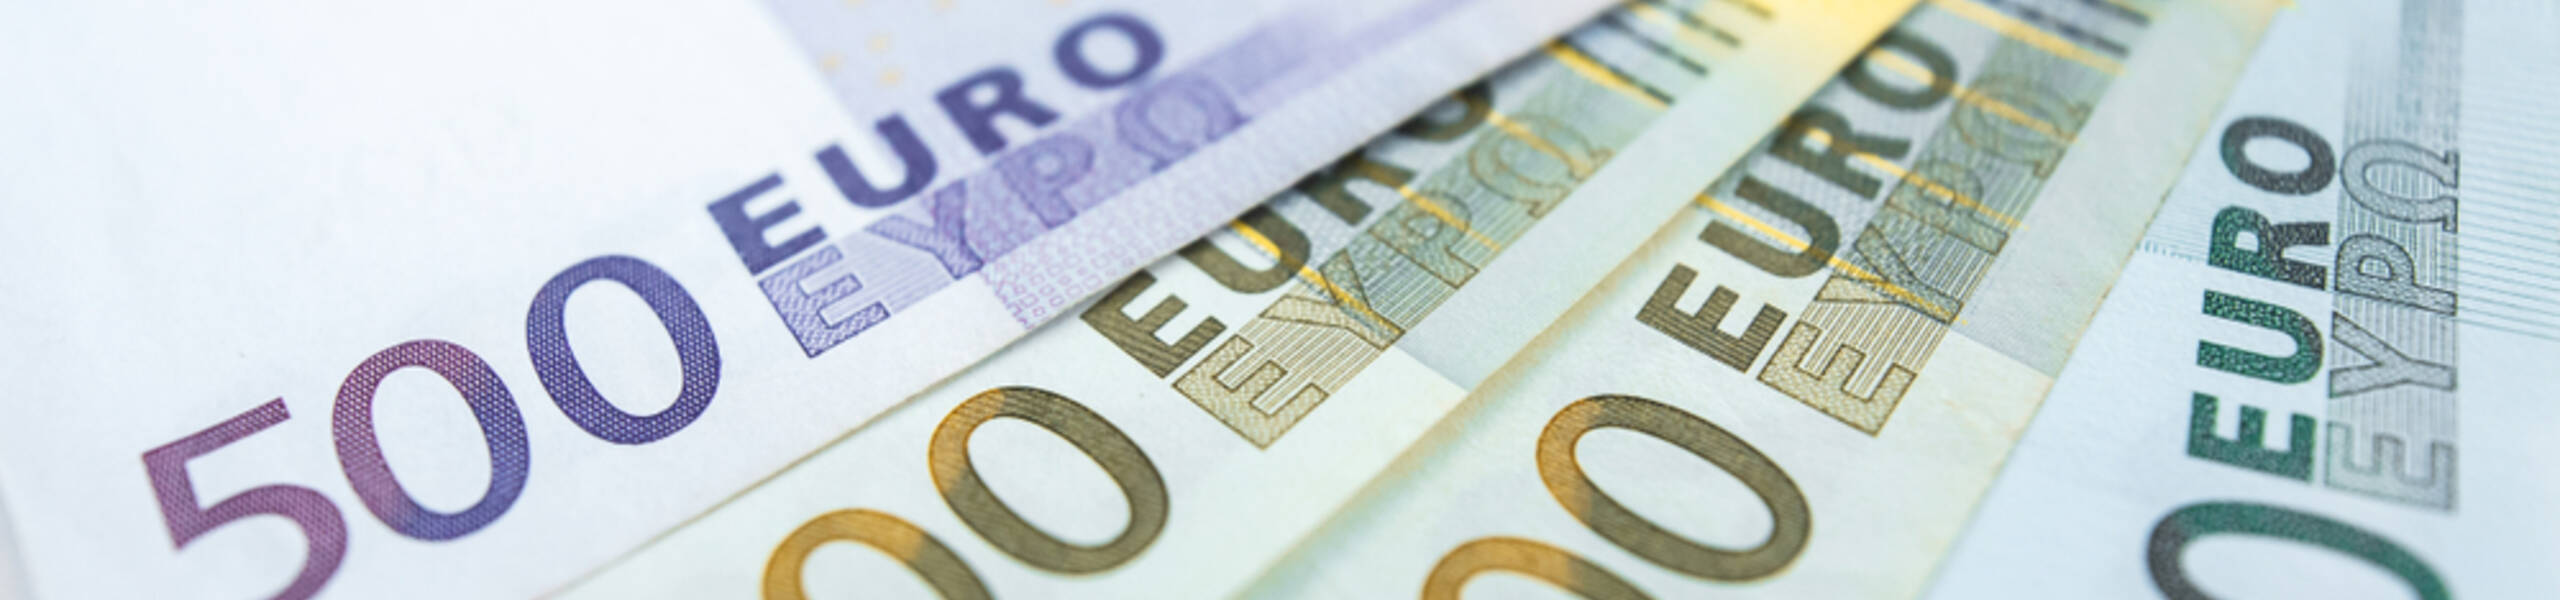 EURUSD Bertahan Di Atas 1.0900 Di Tengah Hawkish ECB